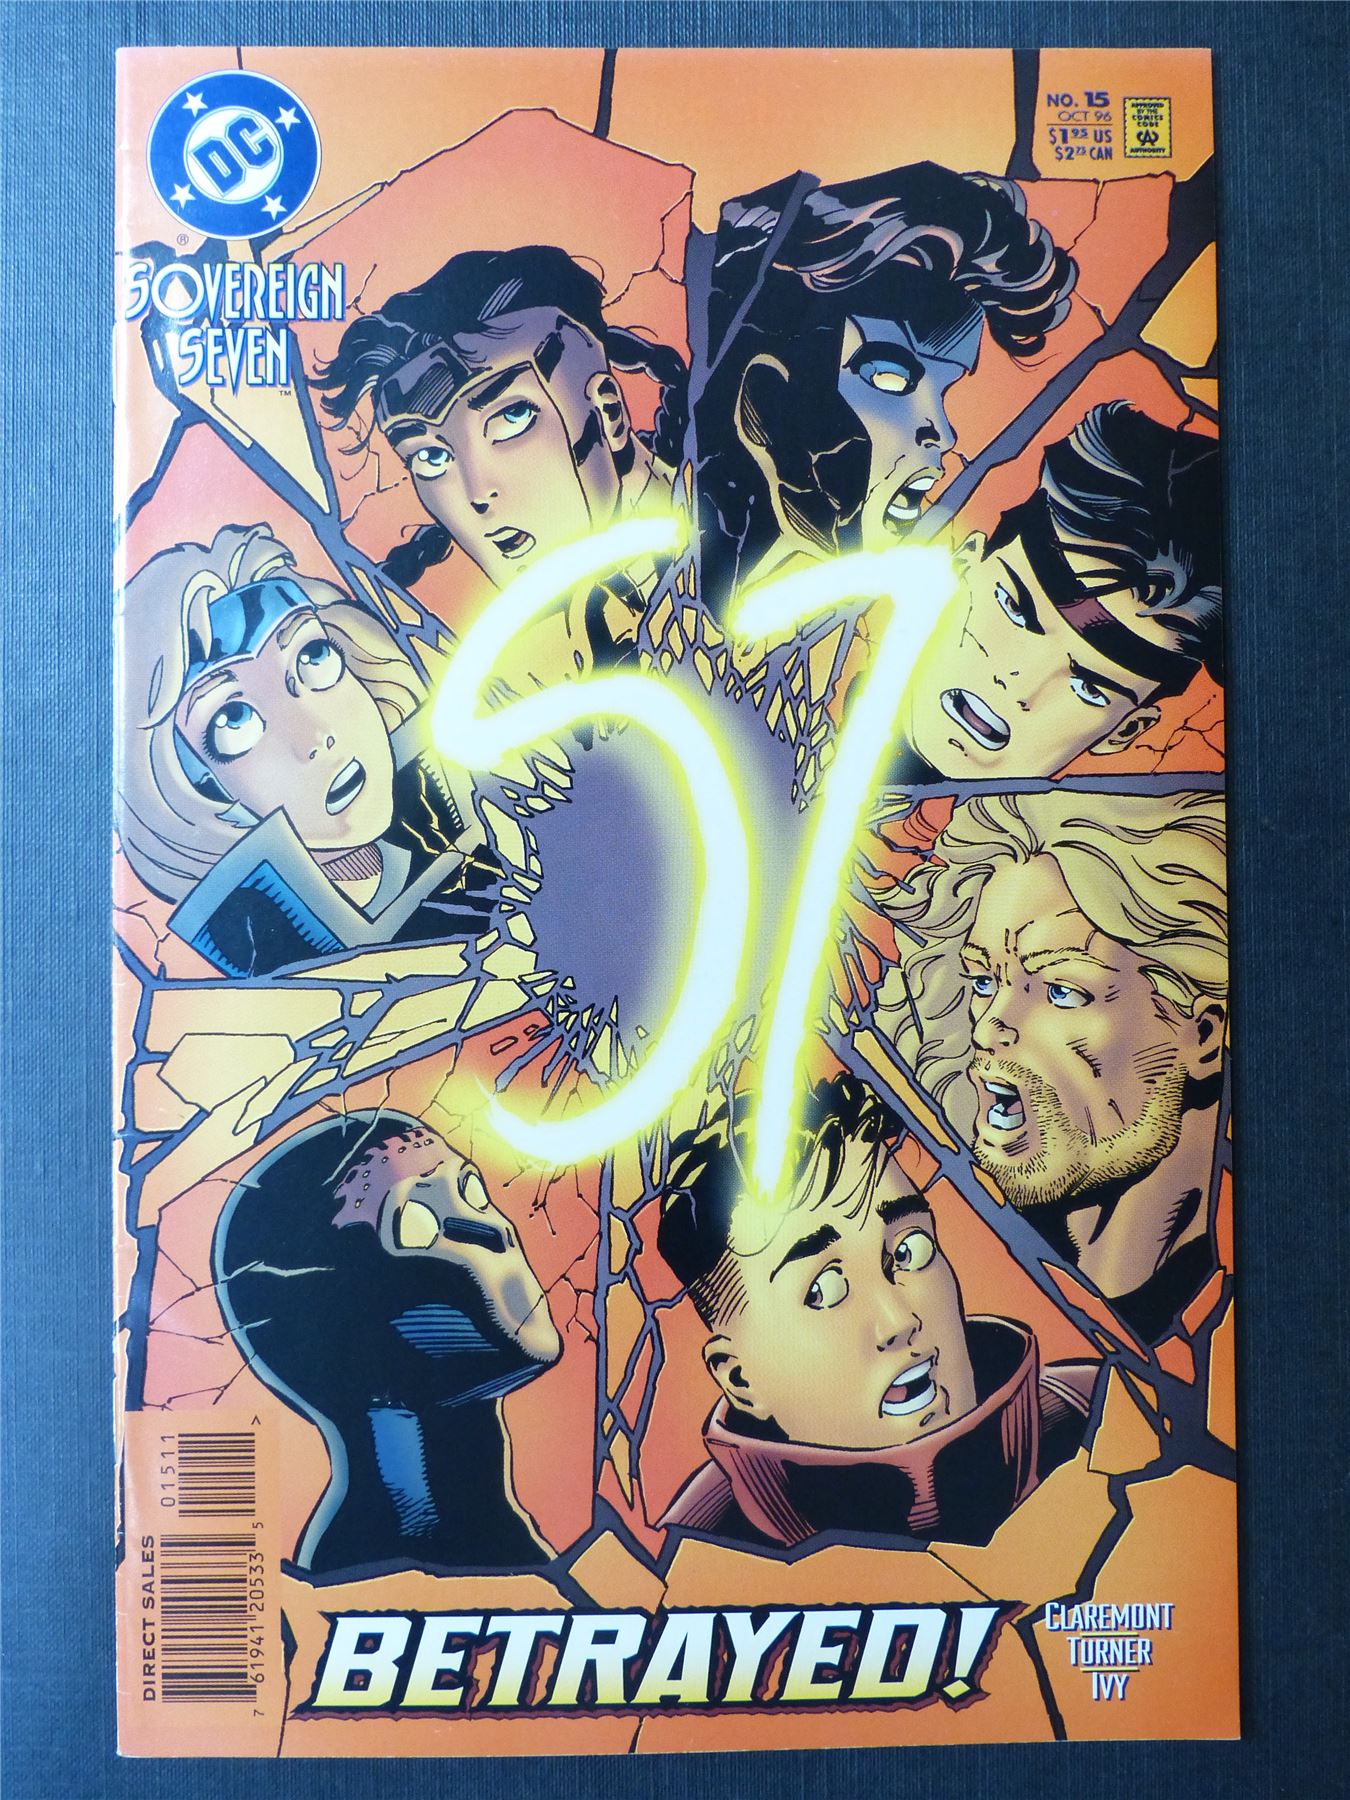 SOVEREIGN Seven #15 - DC Comics #5GT